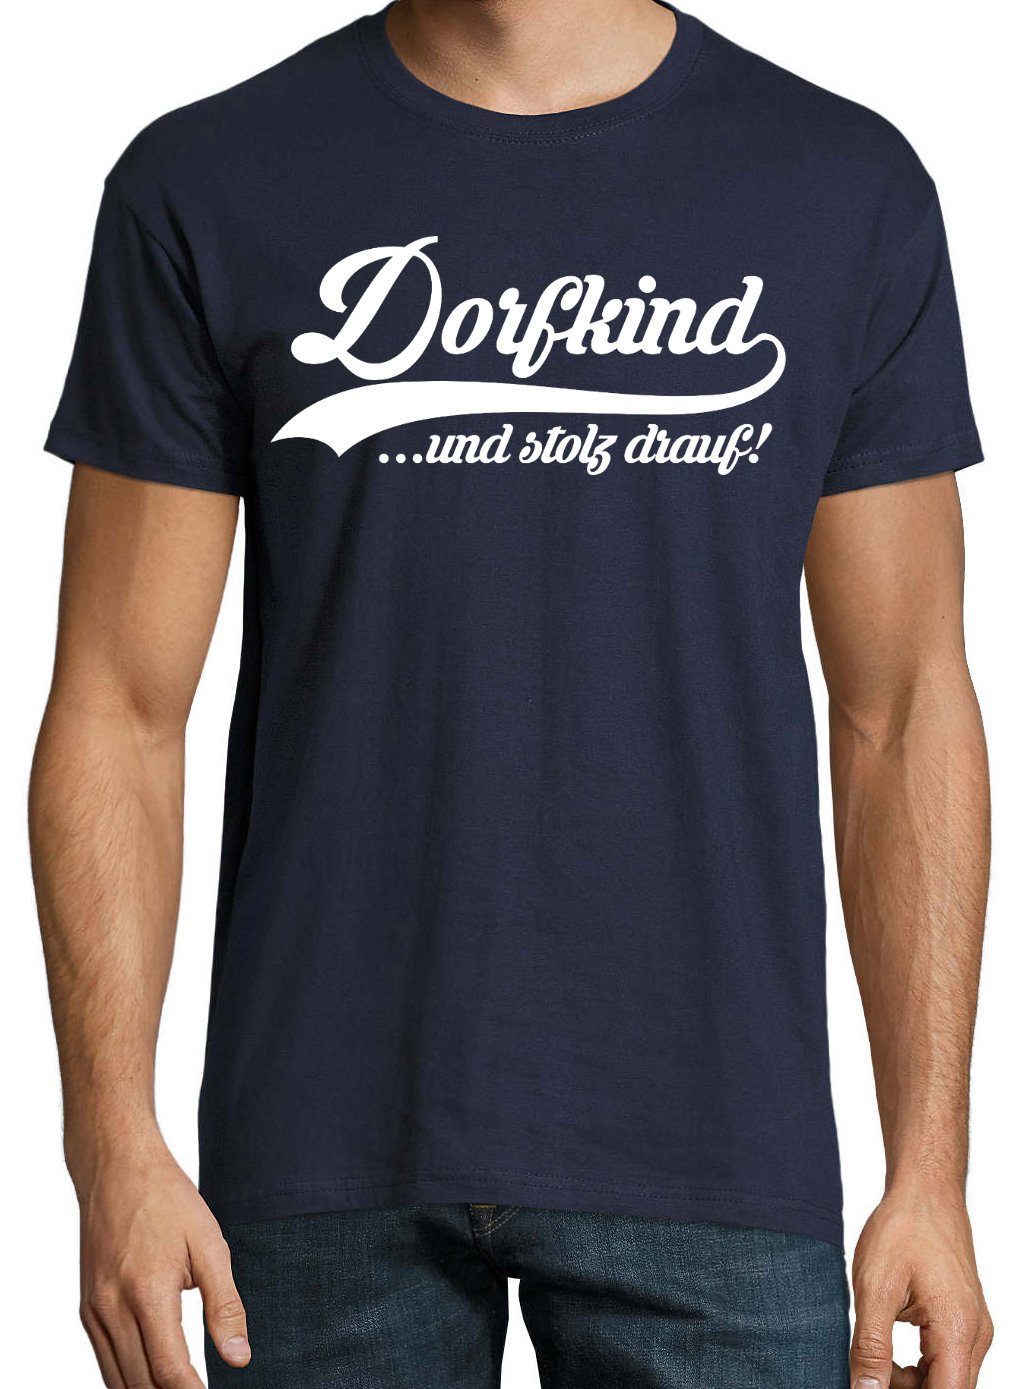 lustigem Spruch Navyblau Herren Dorfkind mit Print-Shirt Designz Youth T-Shirt